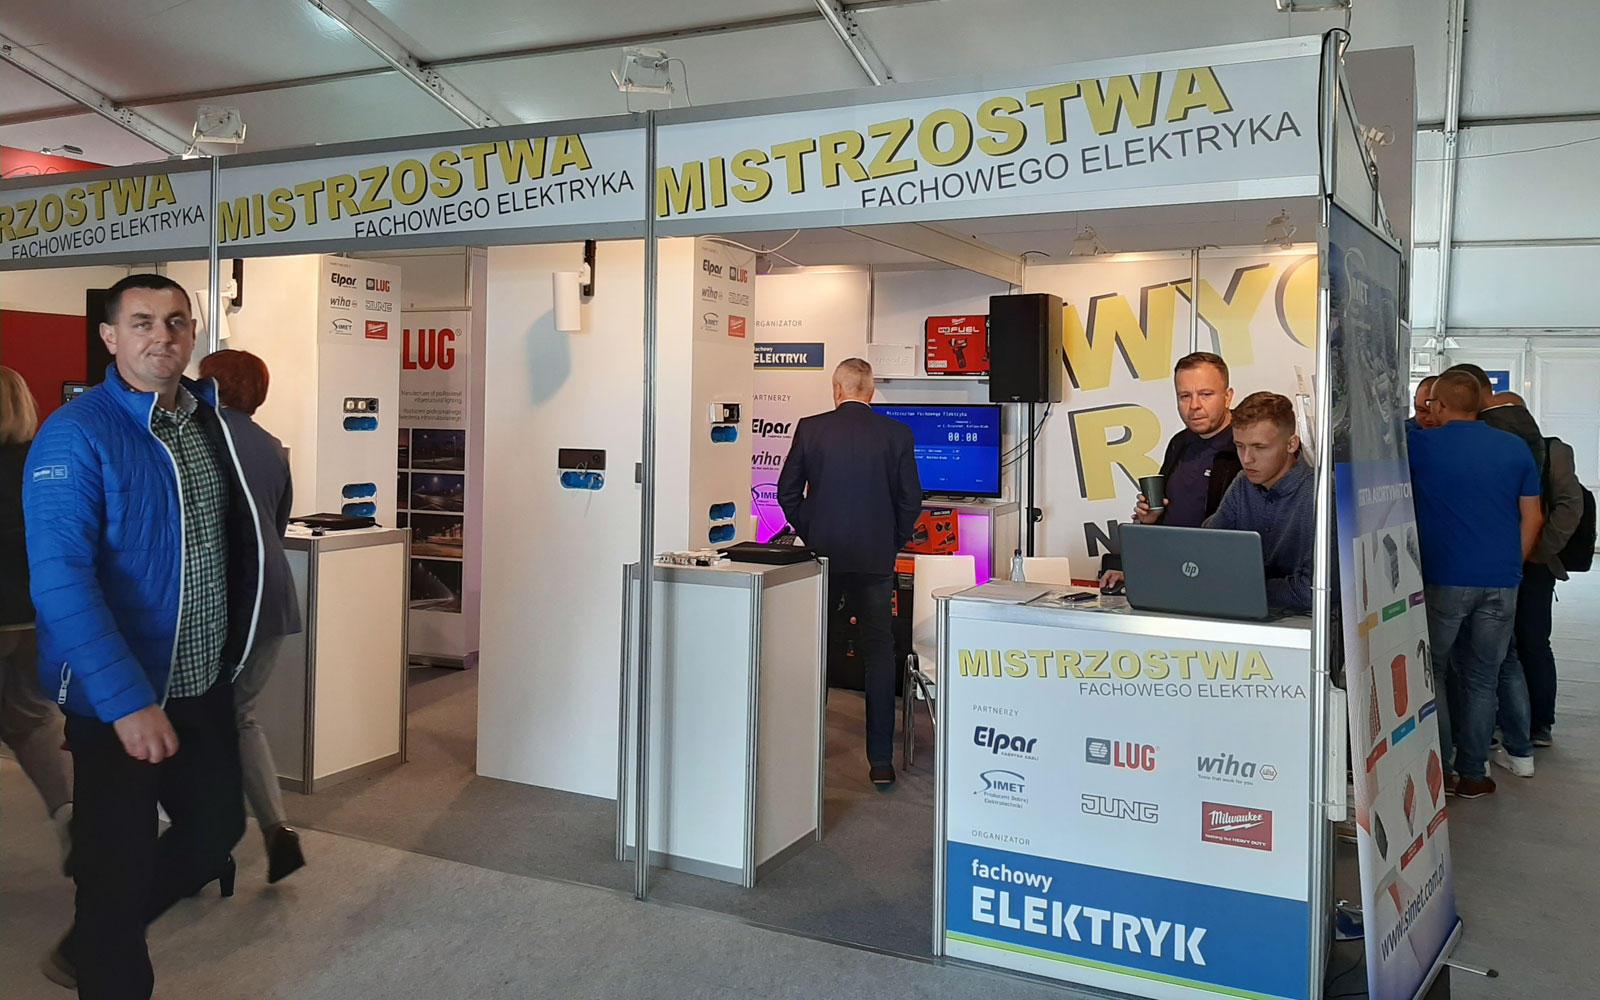 Mistrzostwa Fachowego Elektryka - Energetab 2019